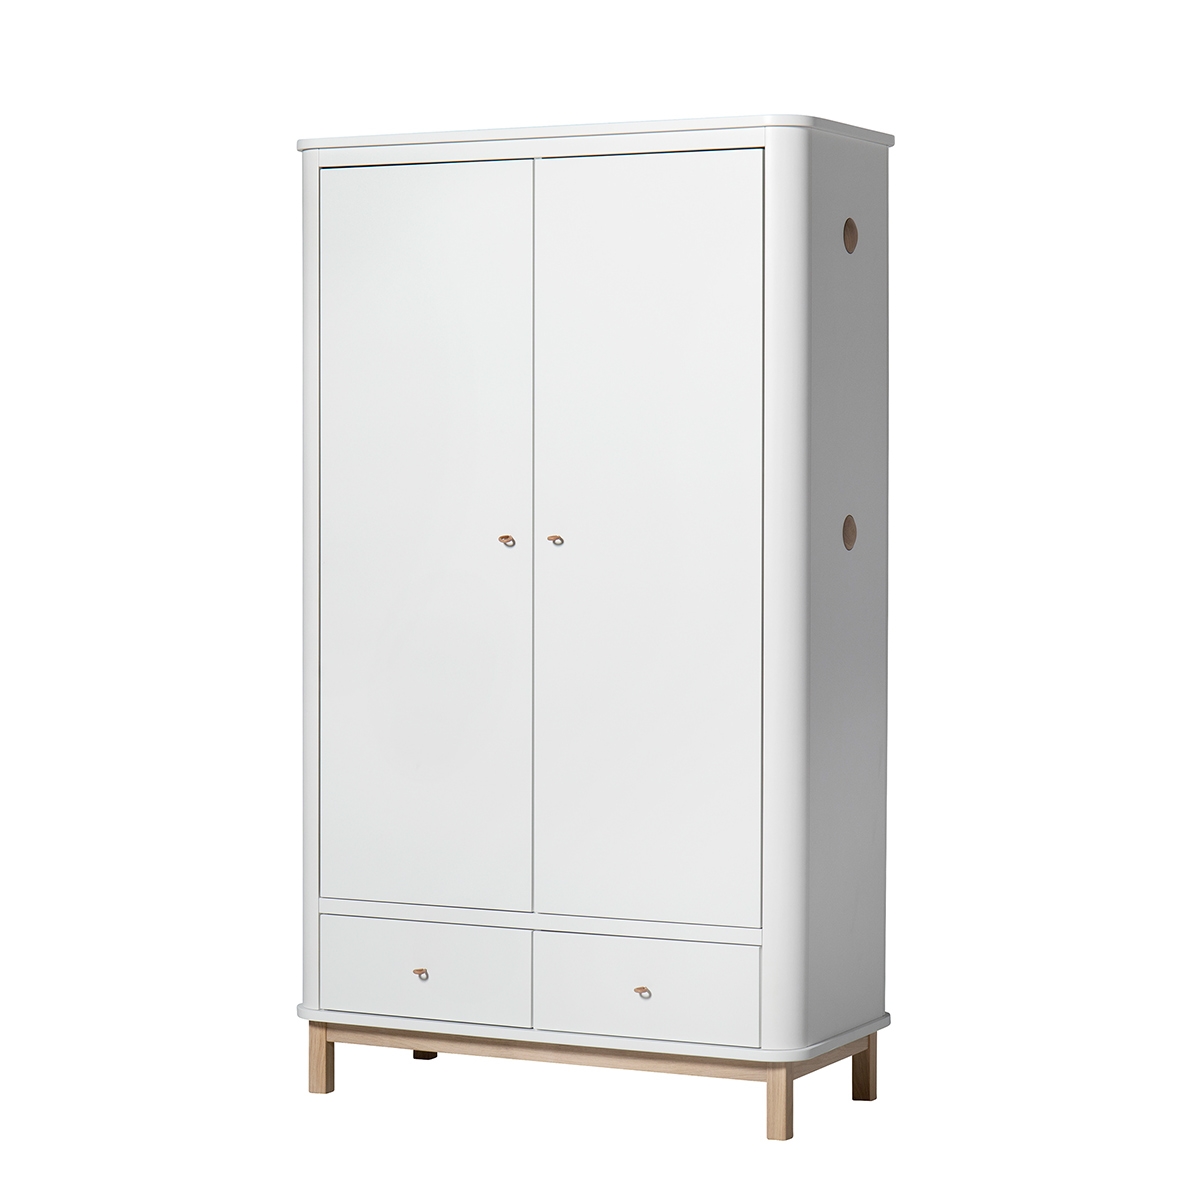 Garderob 2 dörrar Wood vit/ ek Oliver Furniture